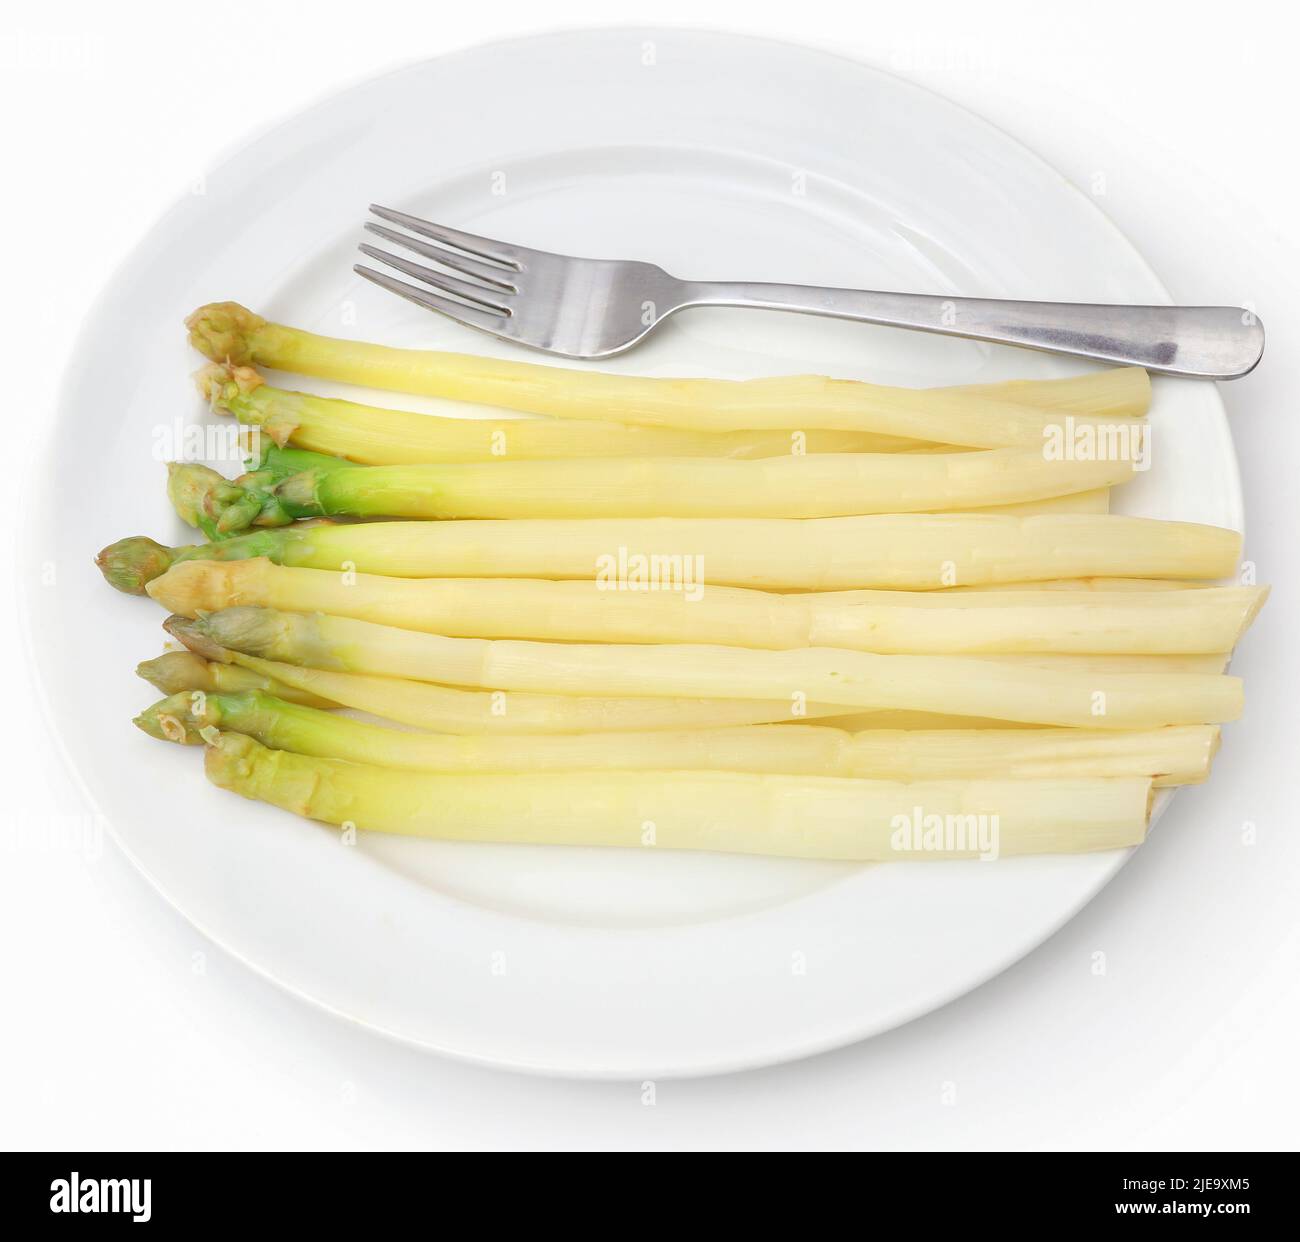 Asparagi bianchi tedeschi in un piatto su sfondo bianco Foto Stock